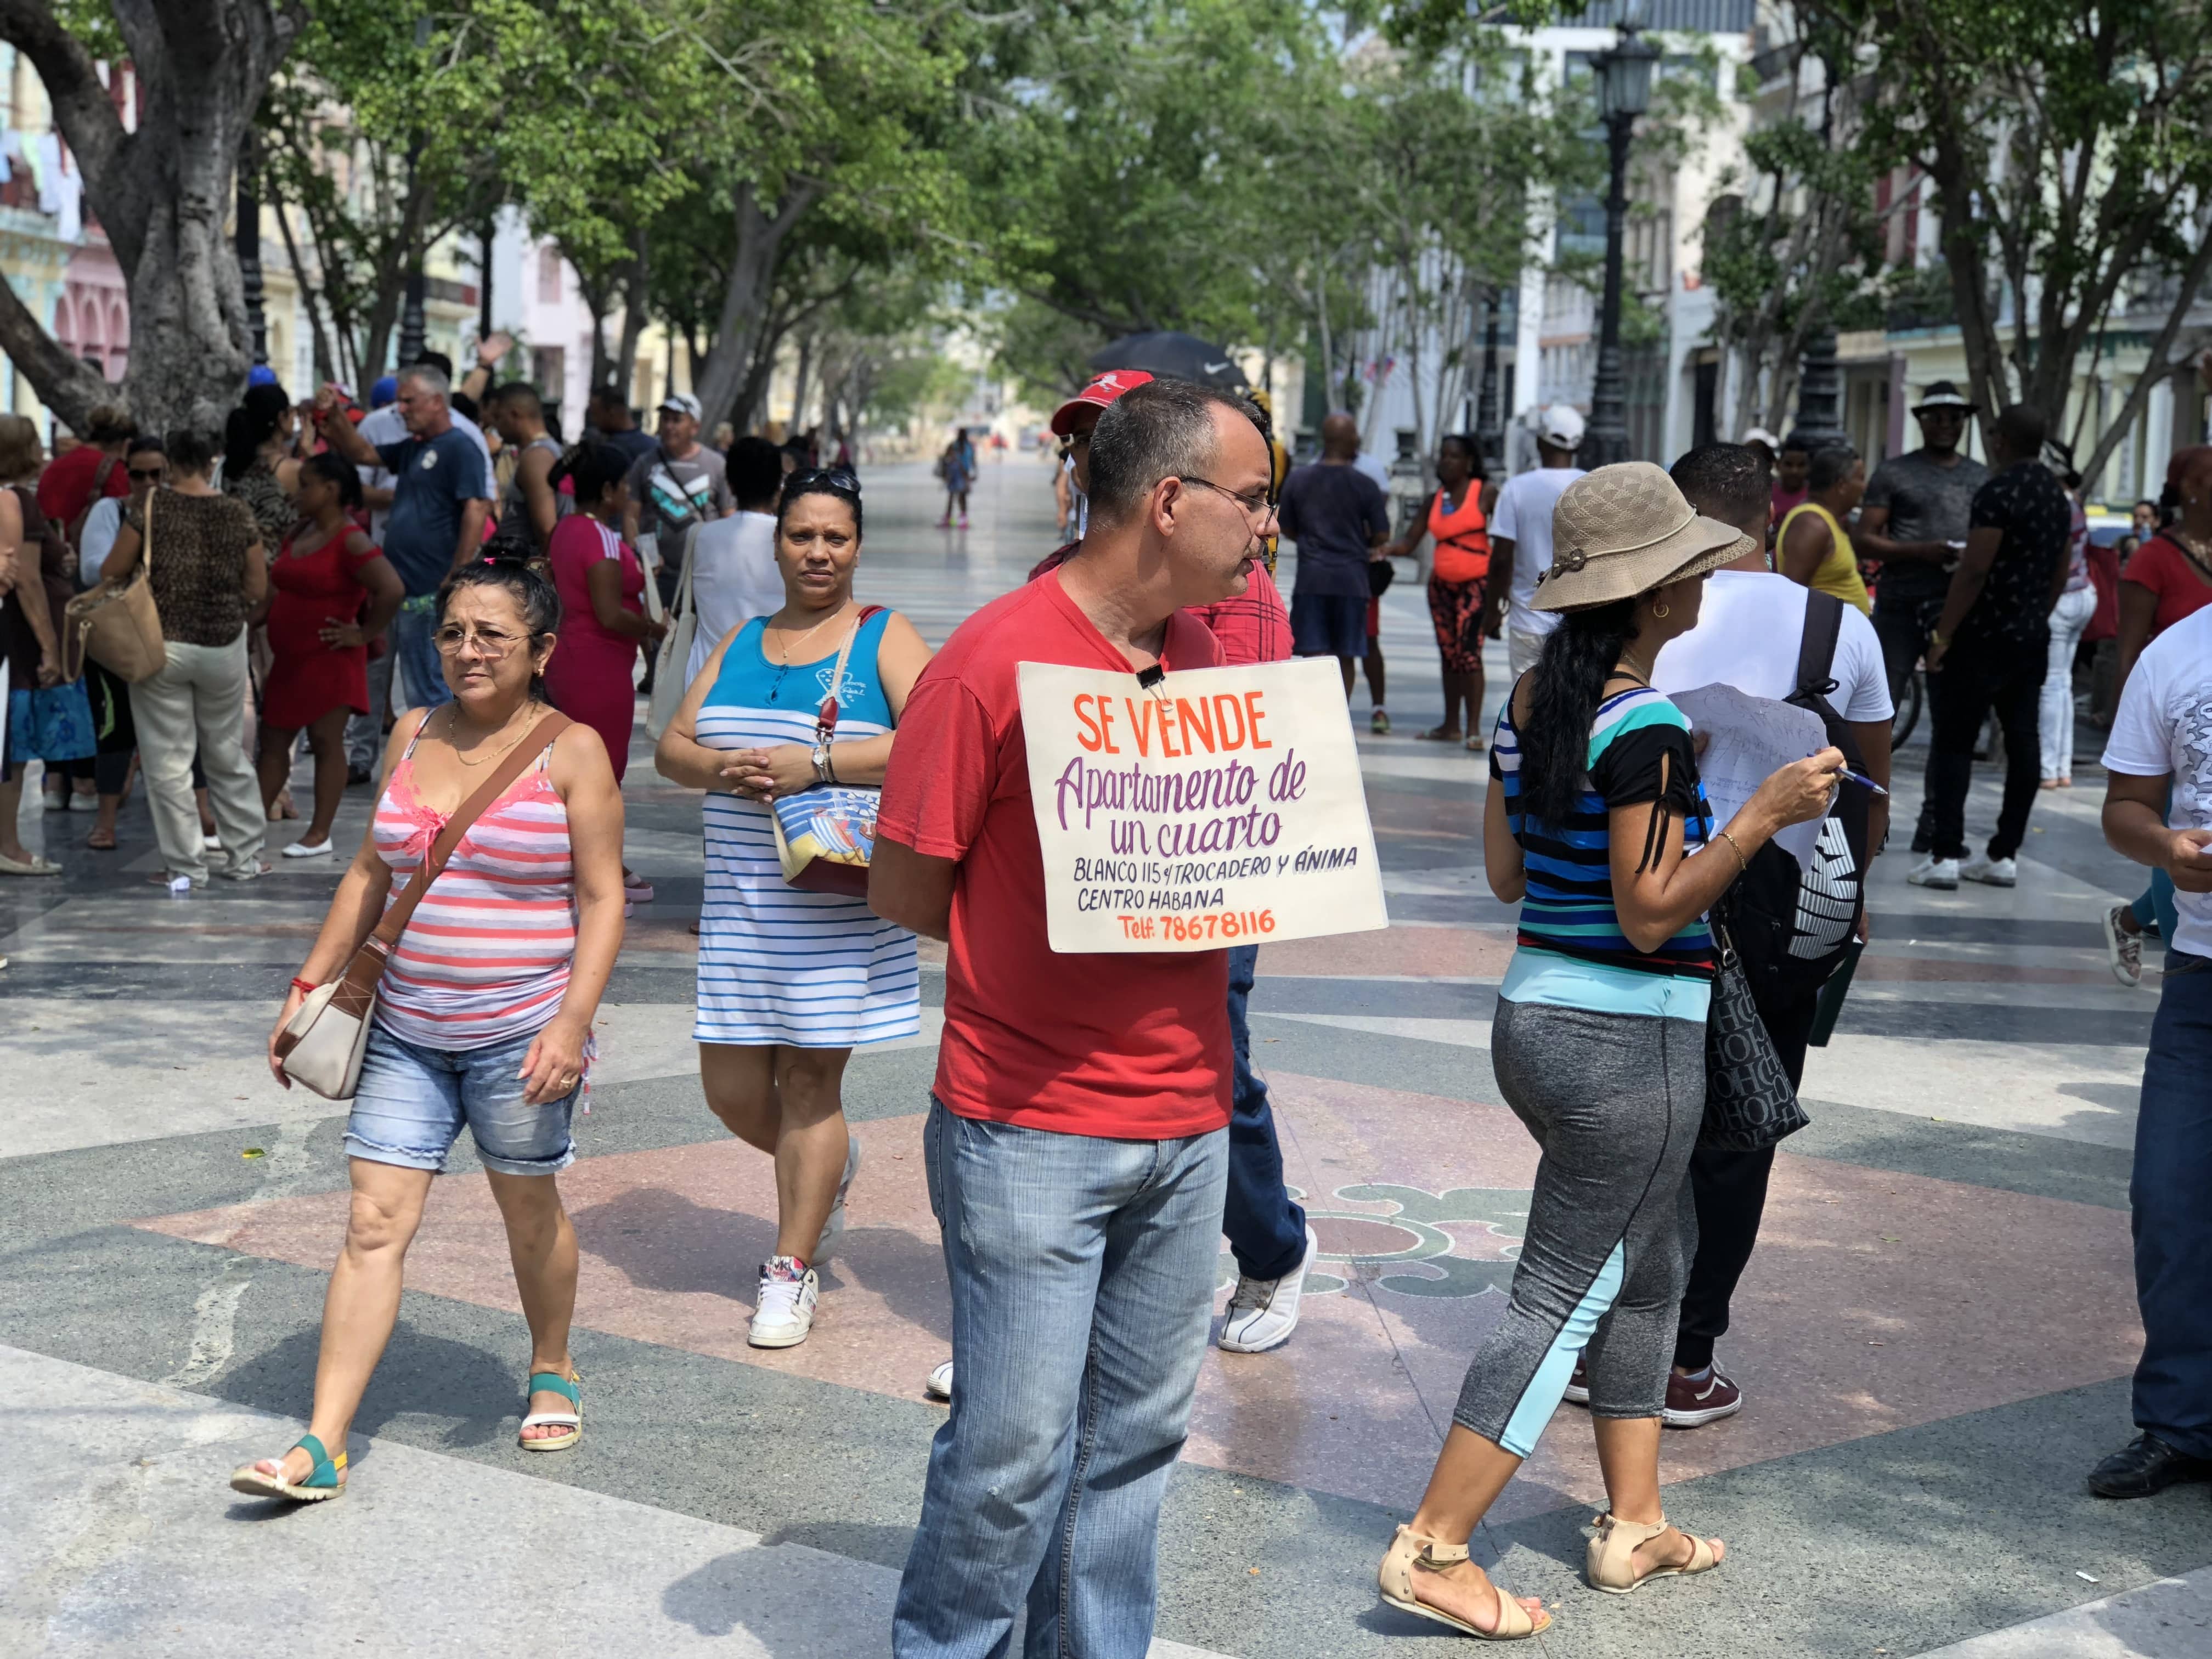 Cubano anuncia venta de apartamento de un cuarto en "bolsa de permutas" de la calle Prado en La Habana